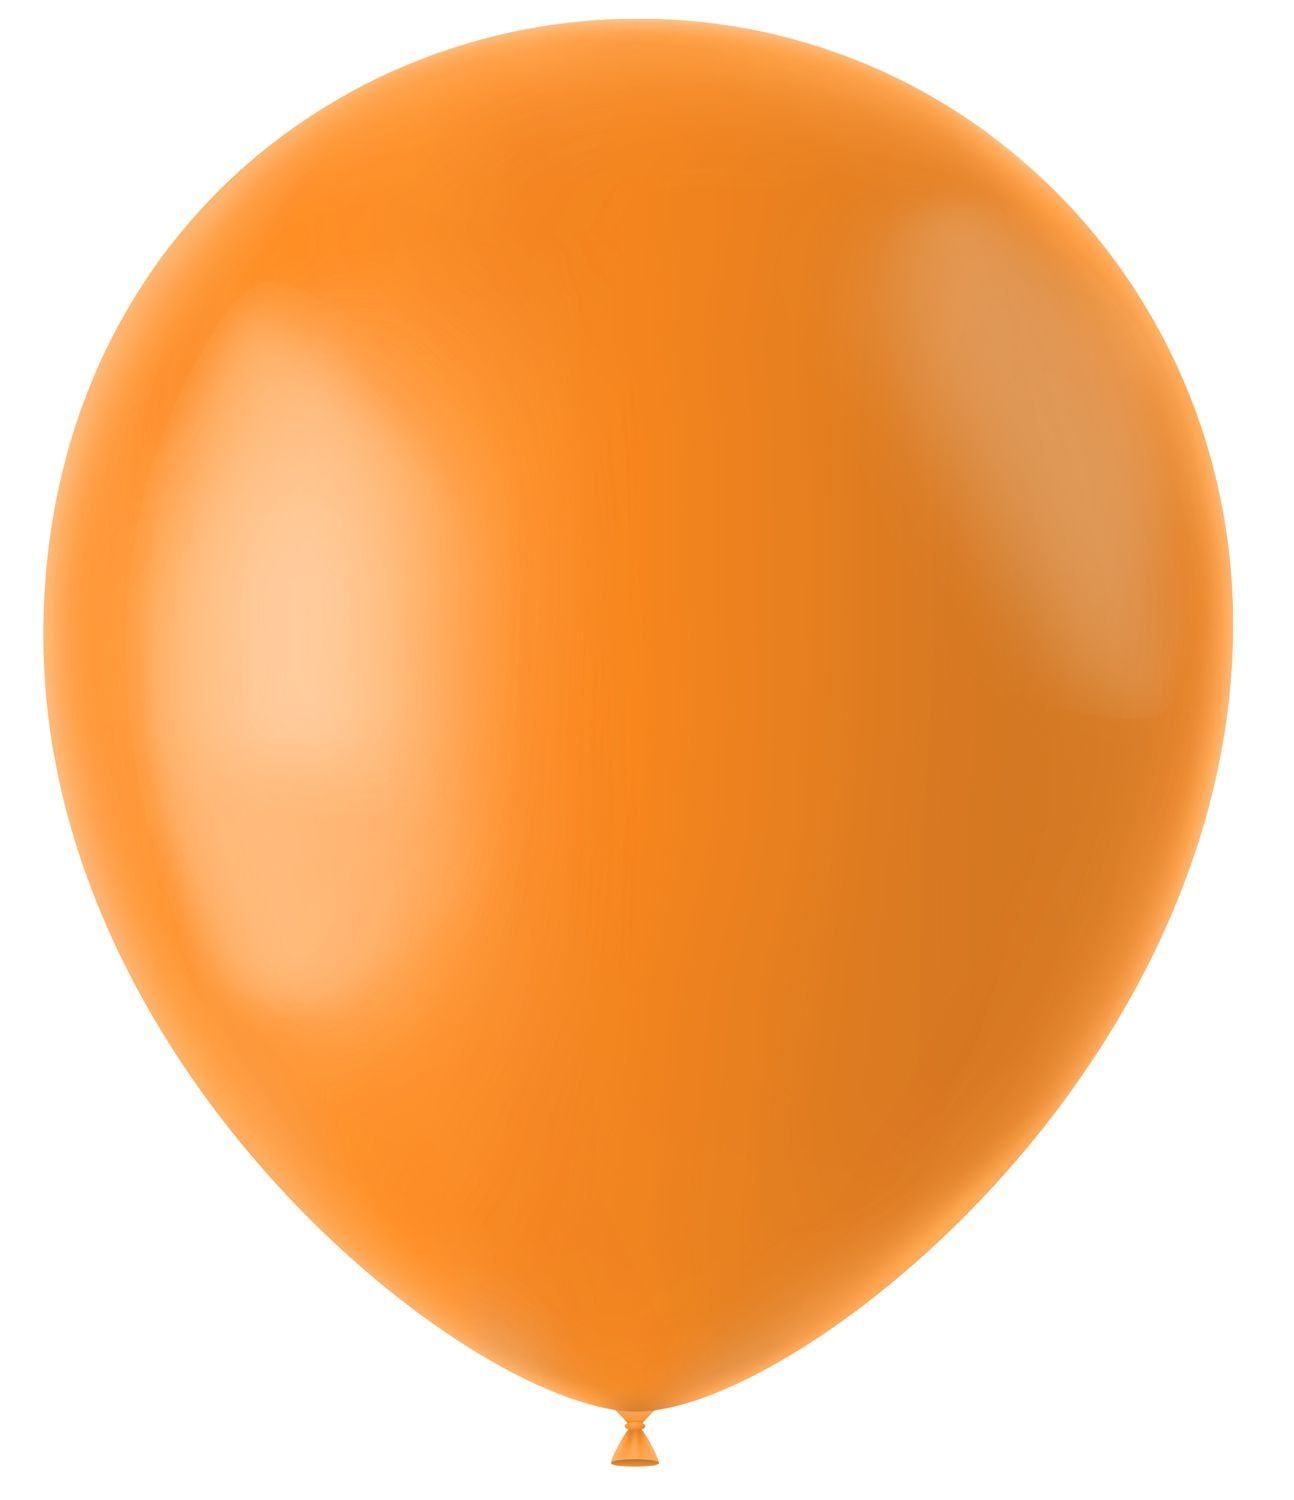 Oranje ballonnen matte kleur